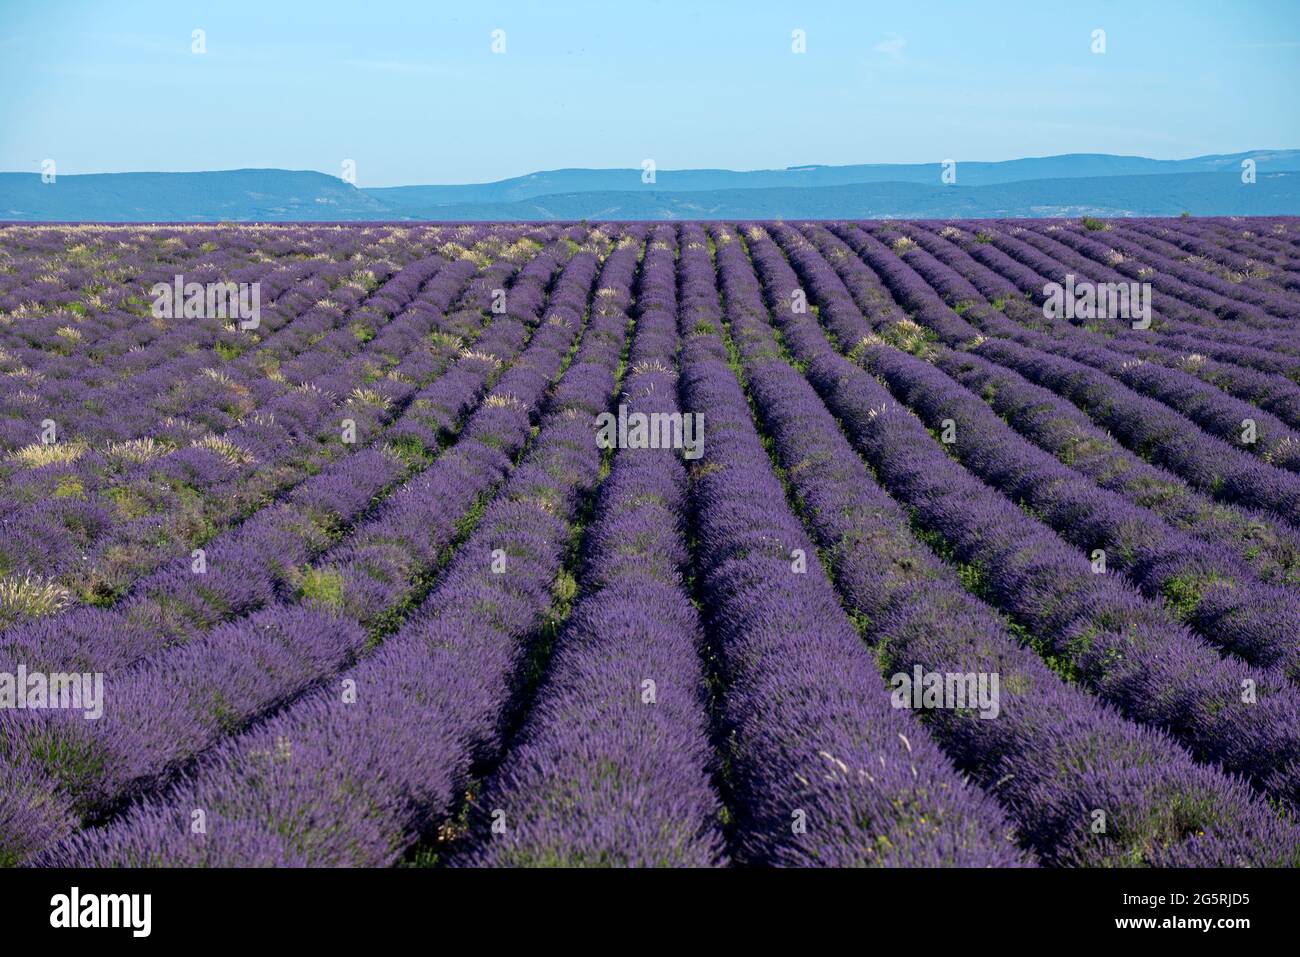 France, Alpes de Haute Provence (04), plateau de Valensole, lavender fields (Lavandula sp.) and mountains Stock Photo